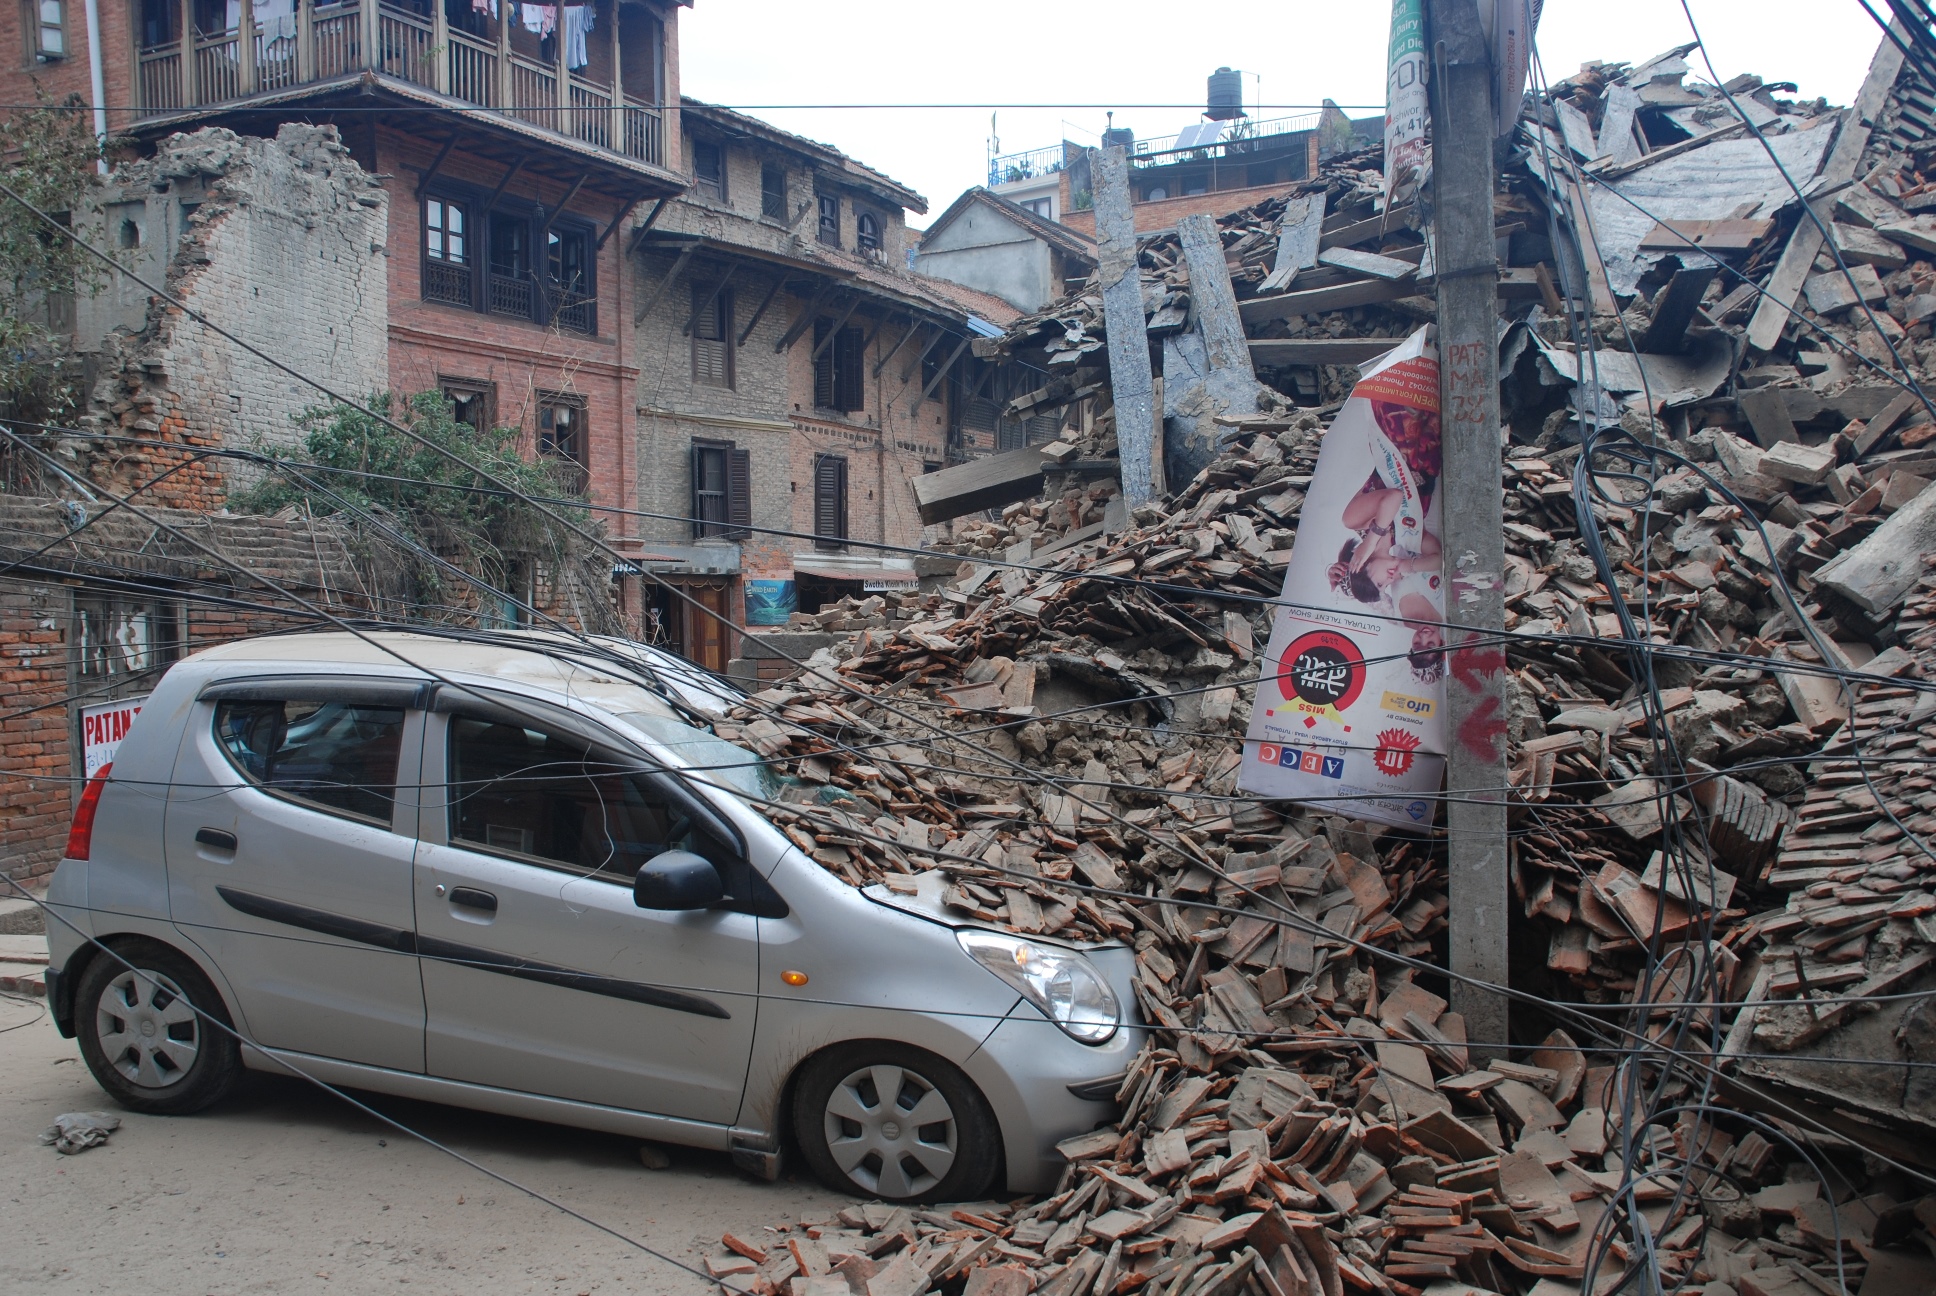 Collapsed buildings in Kathmandu, Nepal